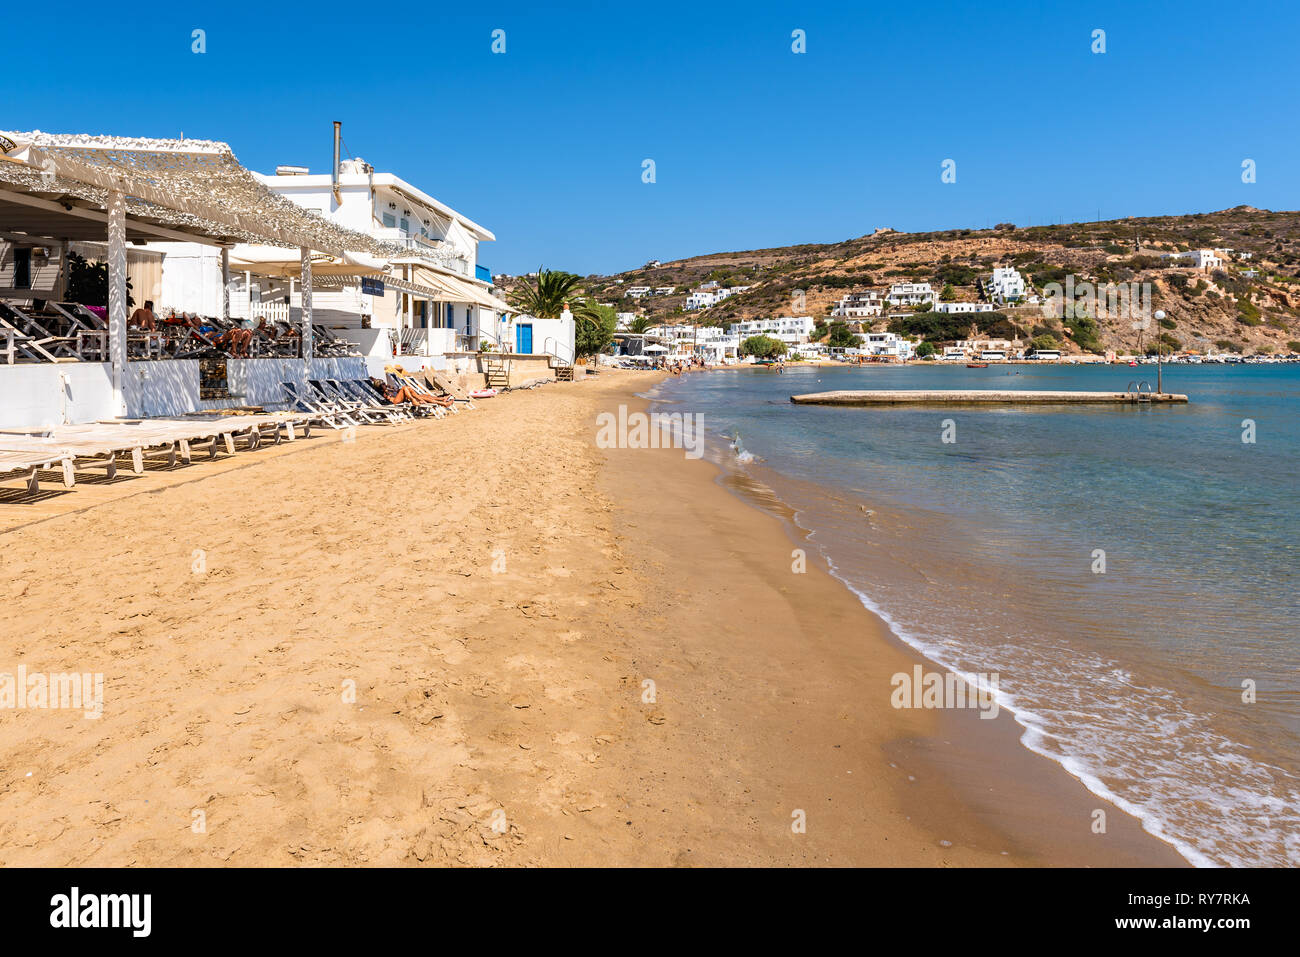 SIFNOS, GRÈCE - 11 septembre 2018 : plage de sable de Platis Gialos village situé au côté sud de Sifnos. Cyclades, Grèce Banque D'Images